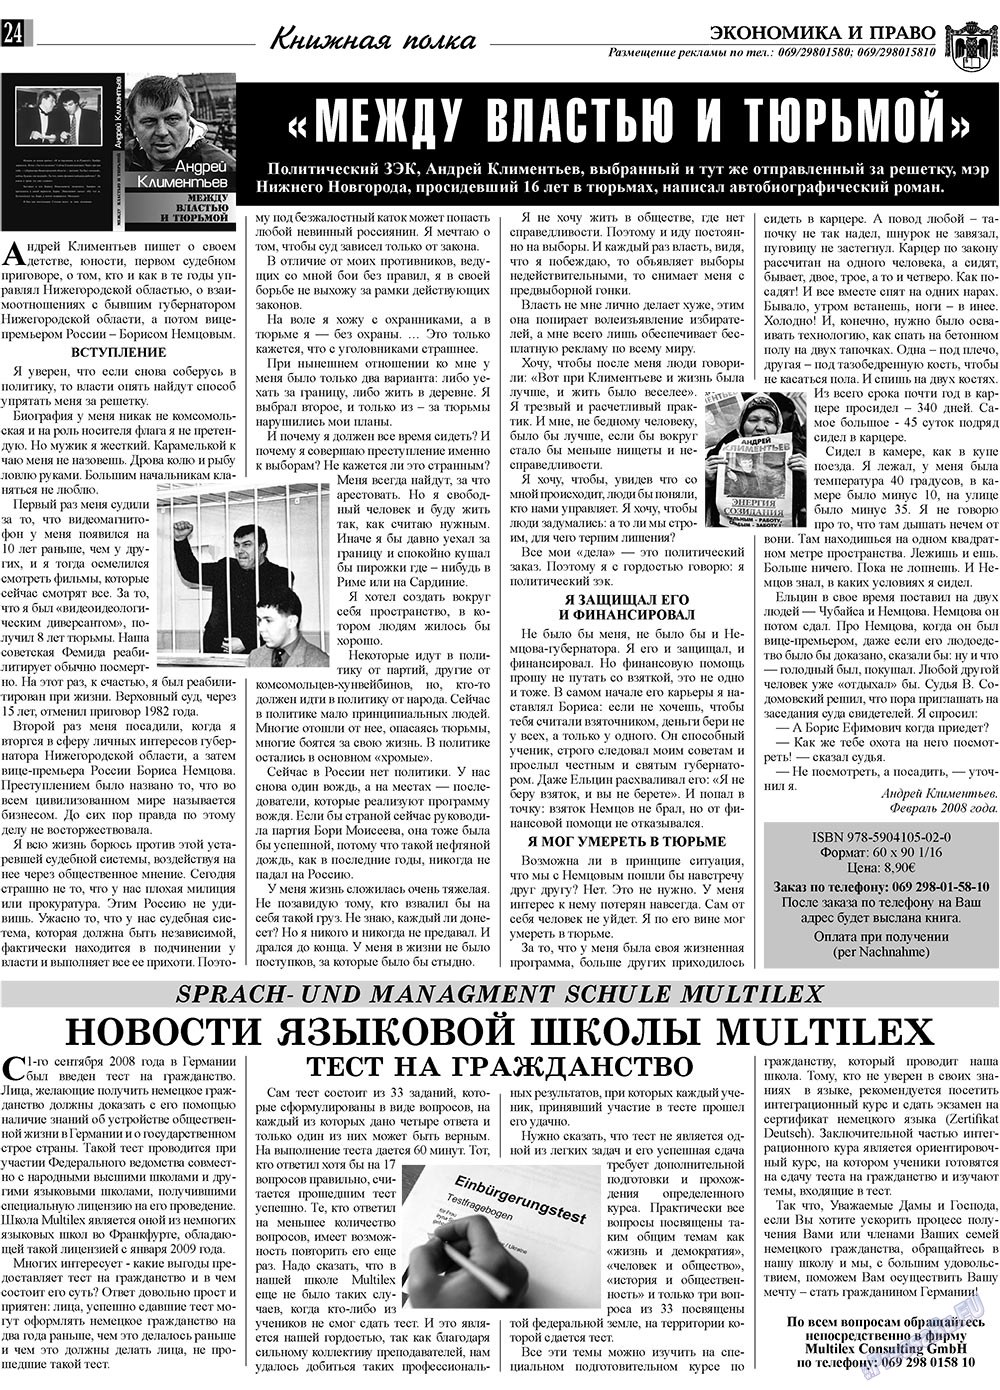 Экономика и право, газета. 2009 №7 стр.24